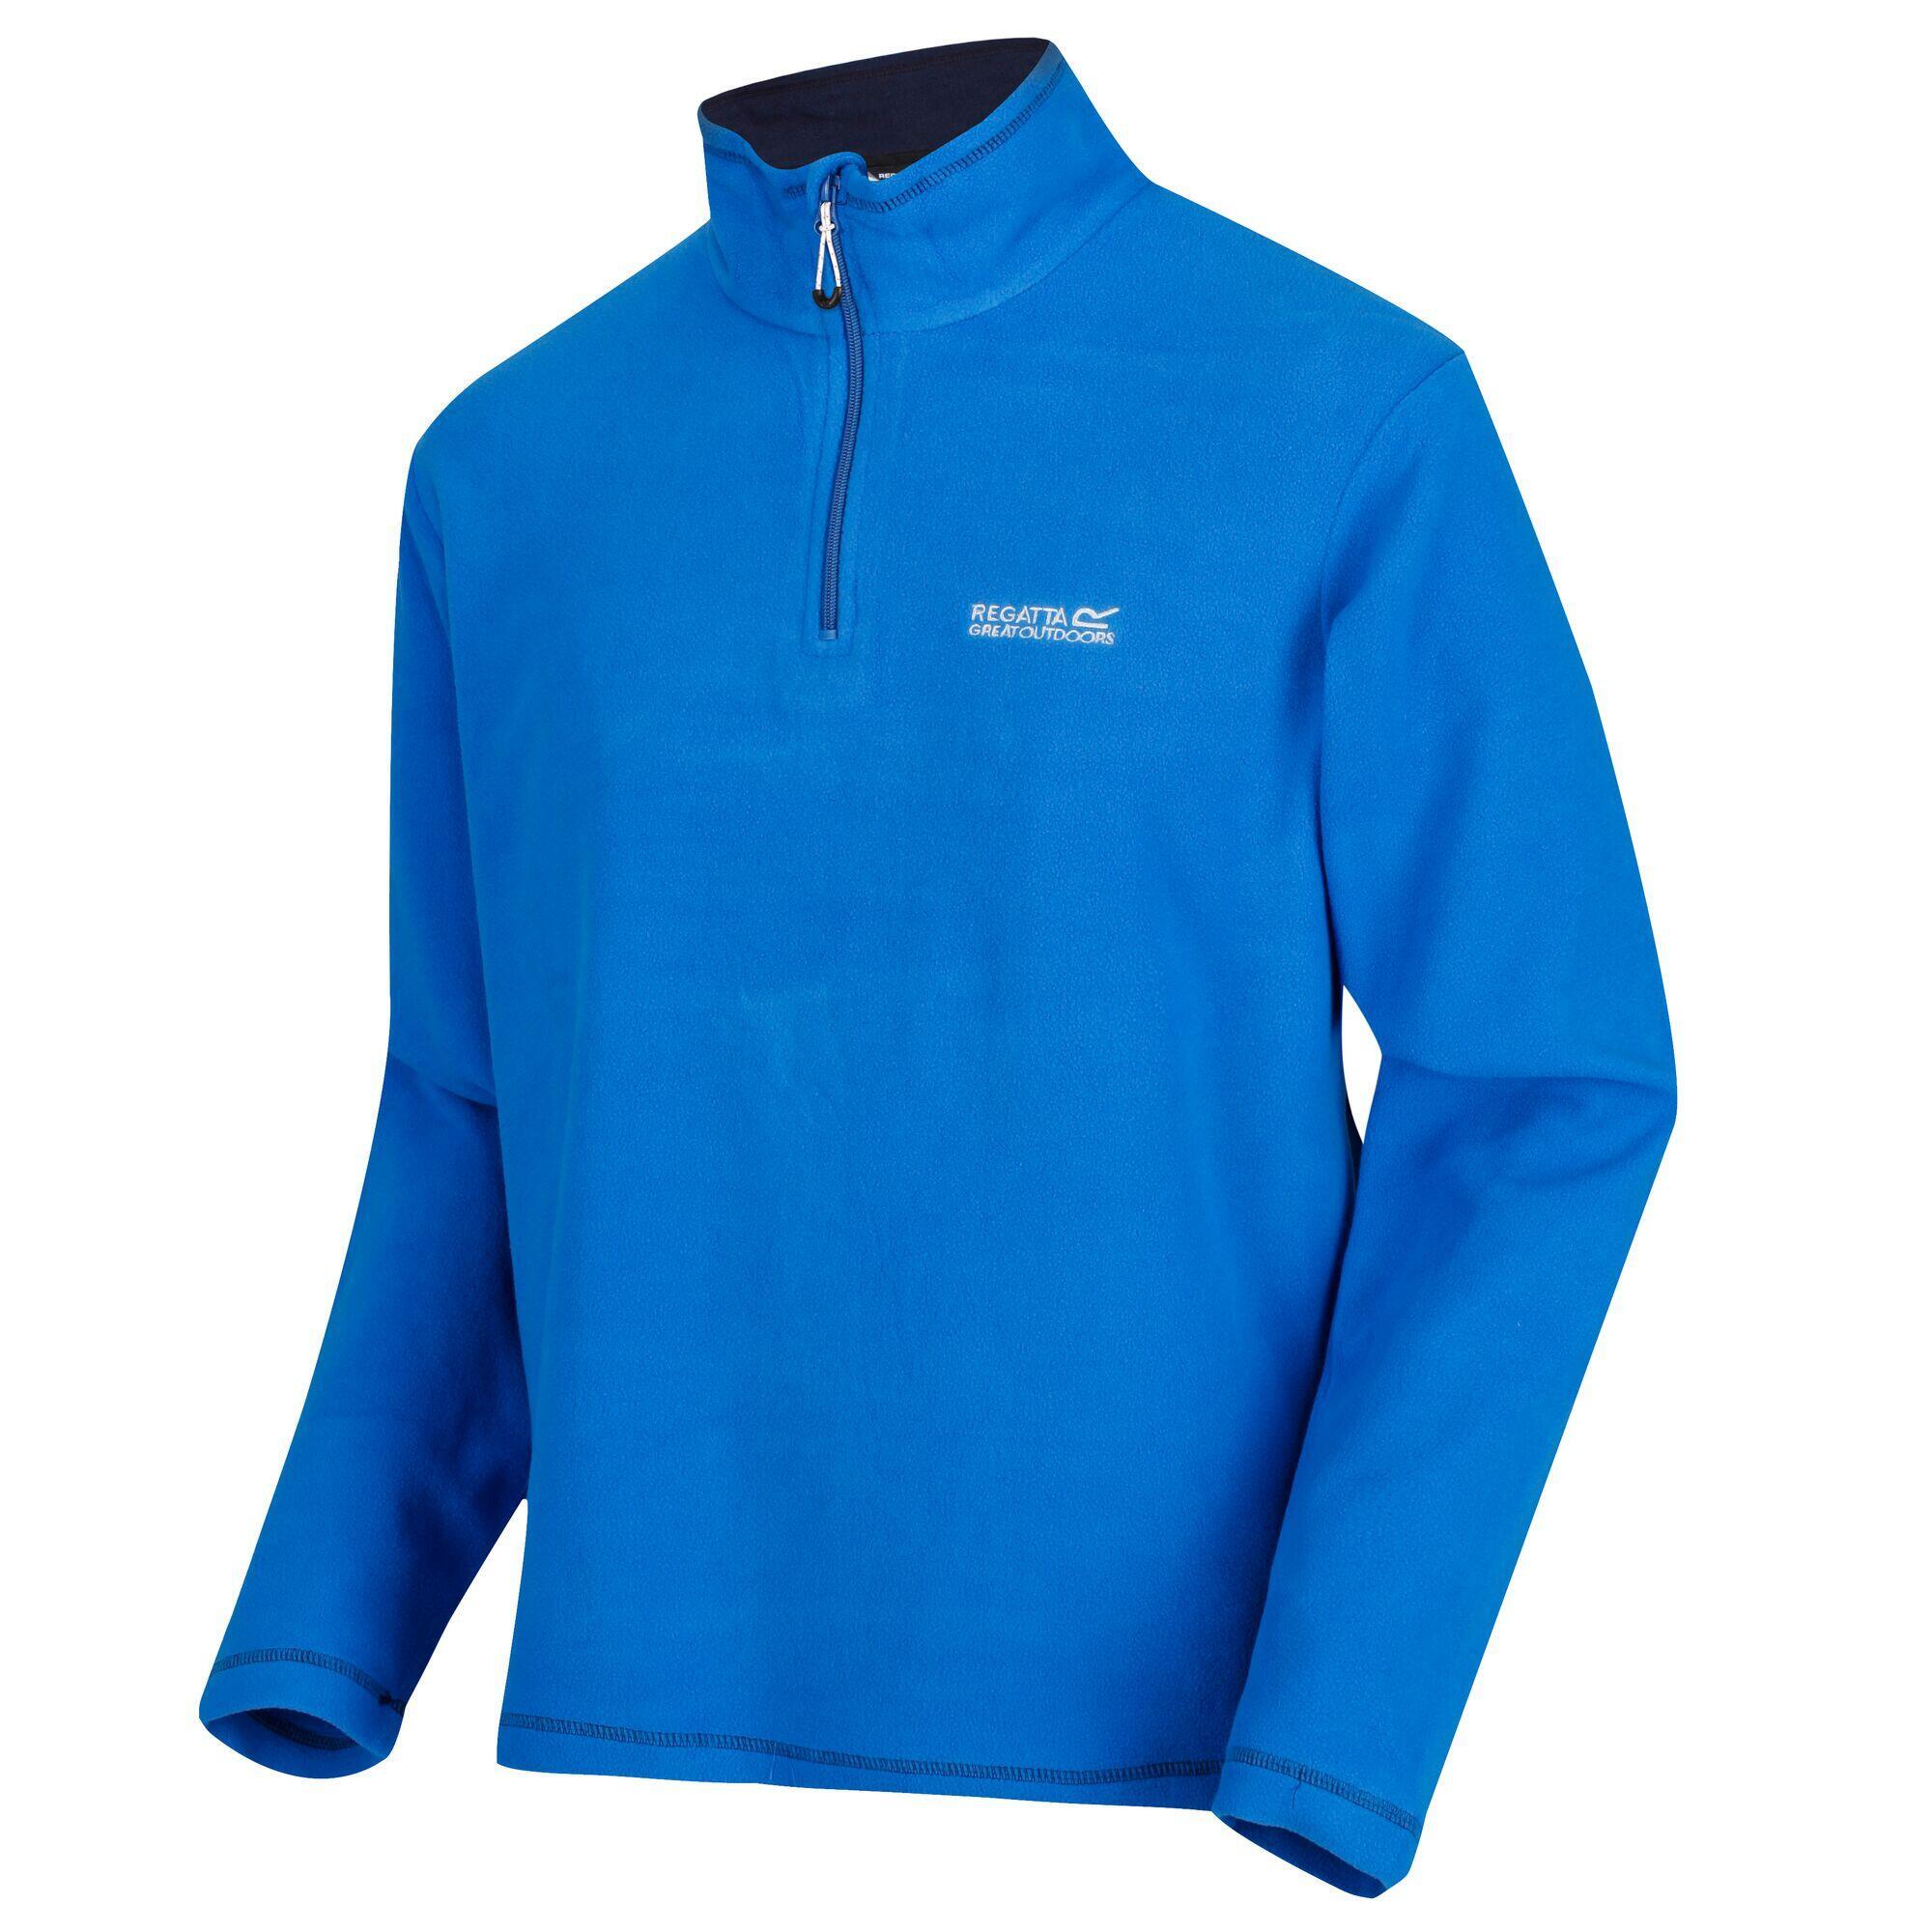 Куртка Regatta Thompson мужская флисовая, синий